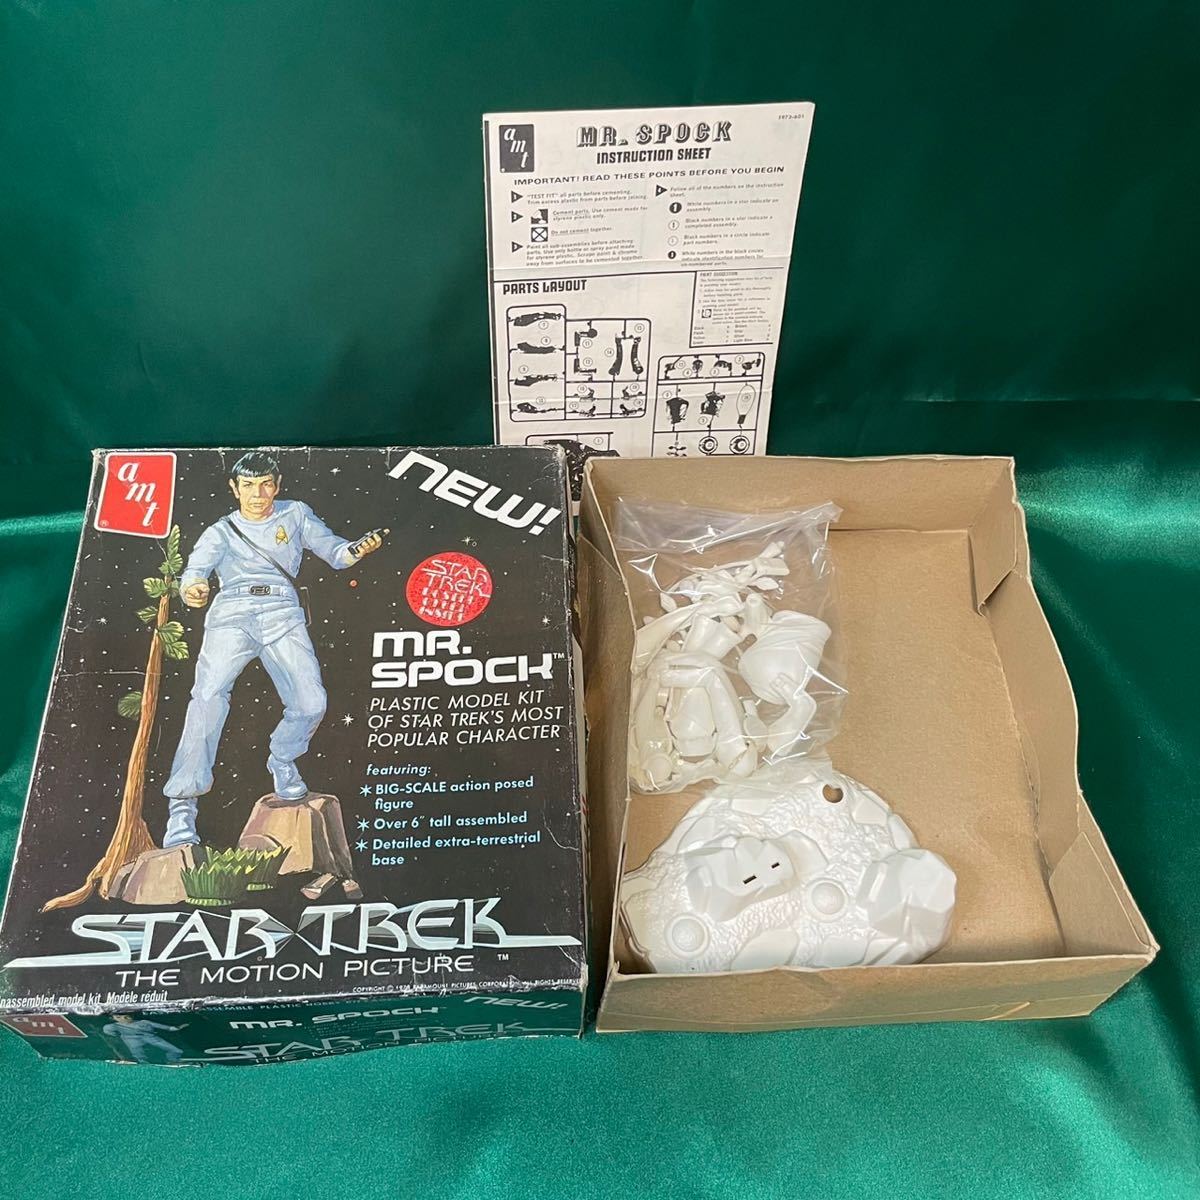  rare goods? MATCHBOX Star * Trek Mr. spo kSTARTREK Mr.SPOCK plastic model abroad movie AMT